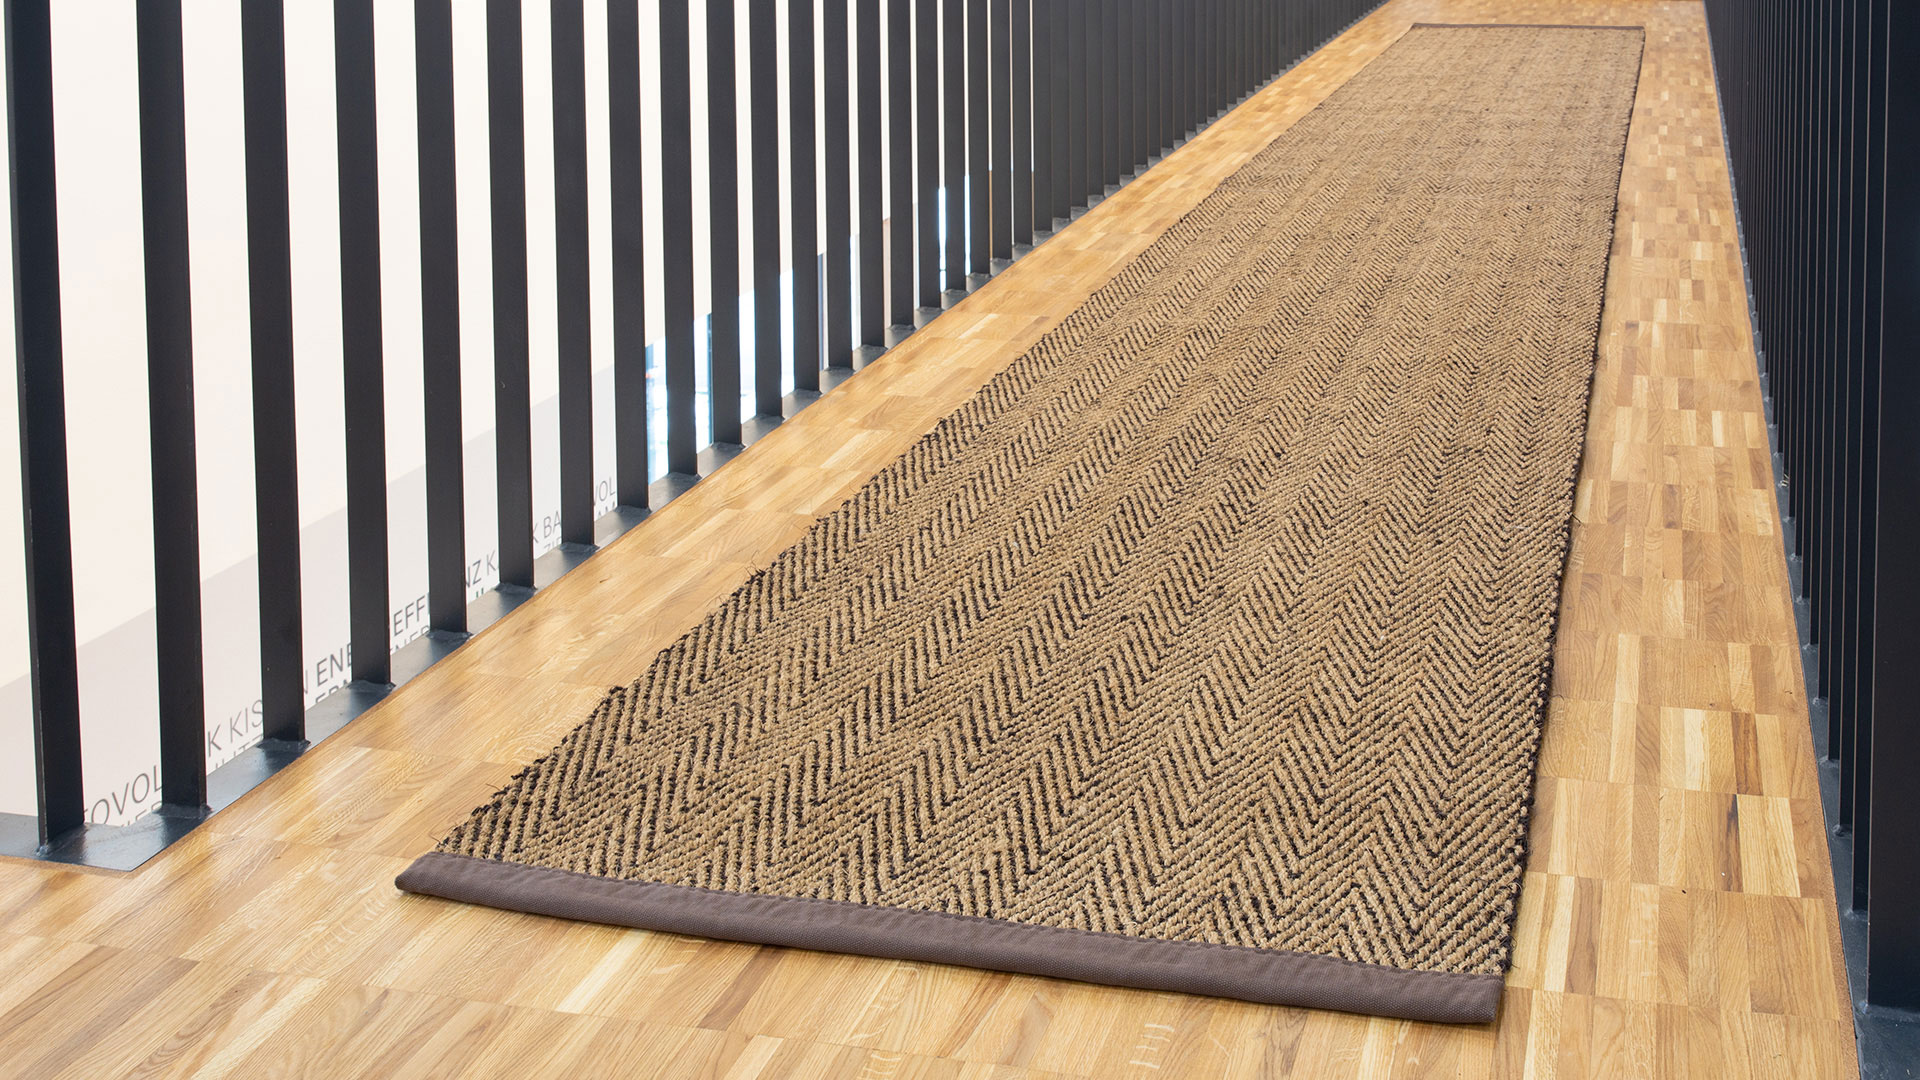 Le tapis de couloir en noix de coco relie les espaces avec majesté - ici en coloris marron naturel